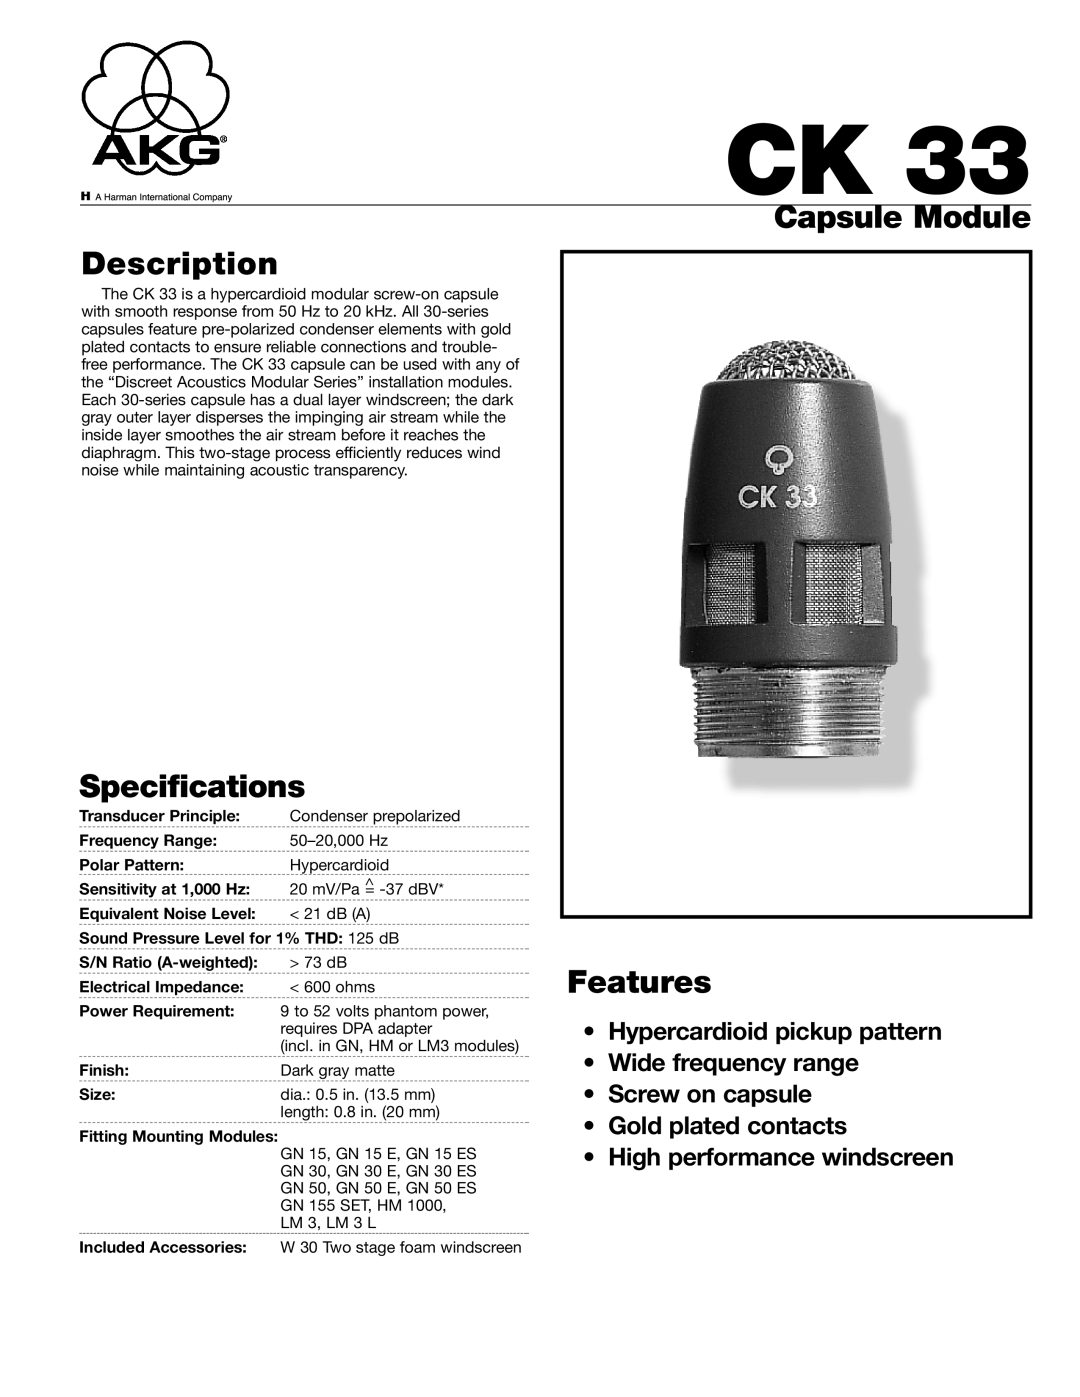 AKG Acoustics CK33 specifications Capsule Module Description, Specifications, Features 